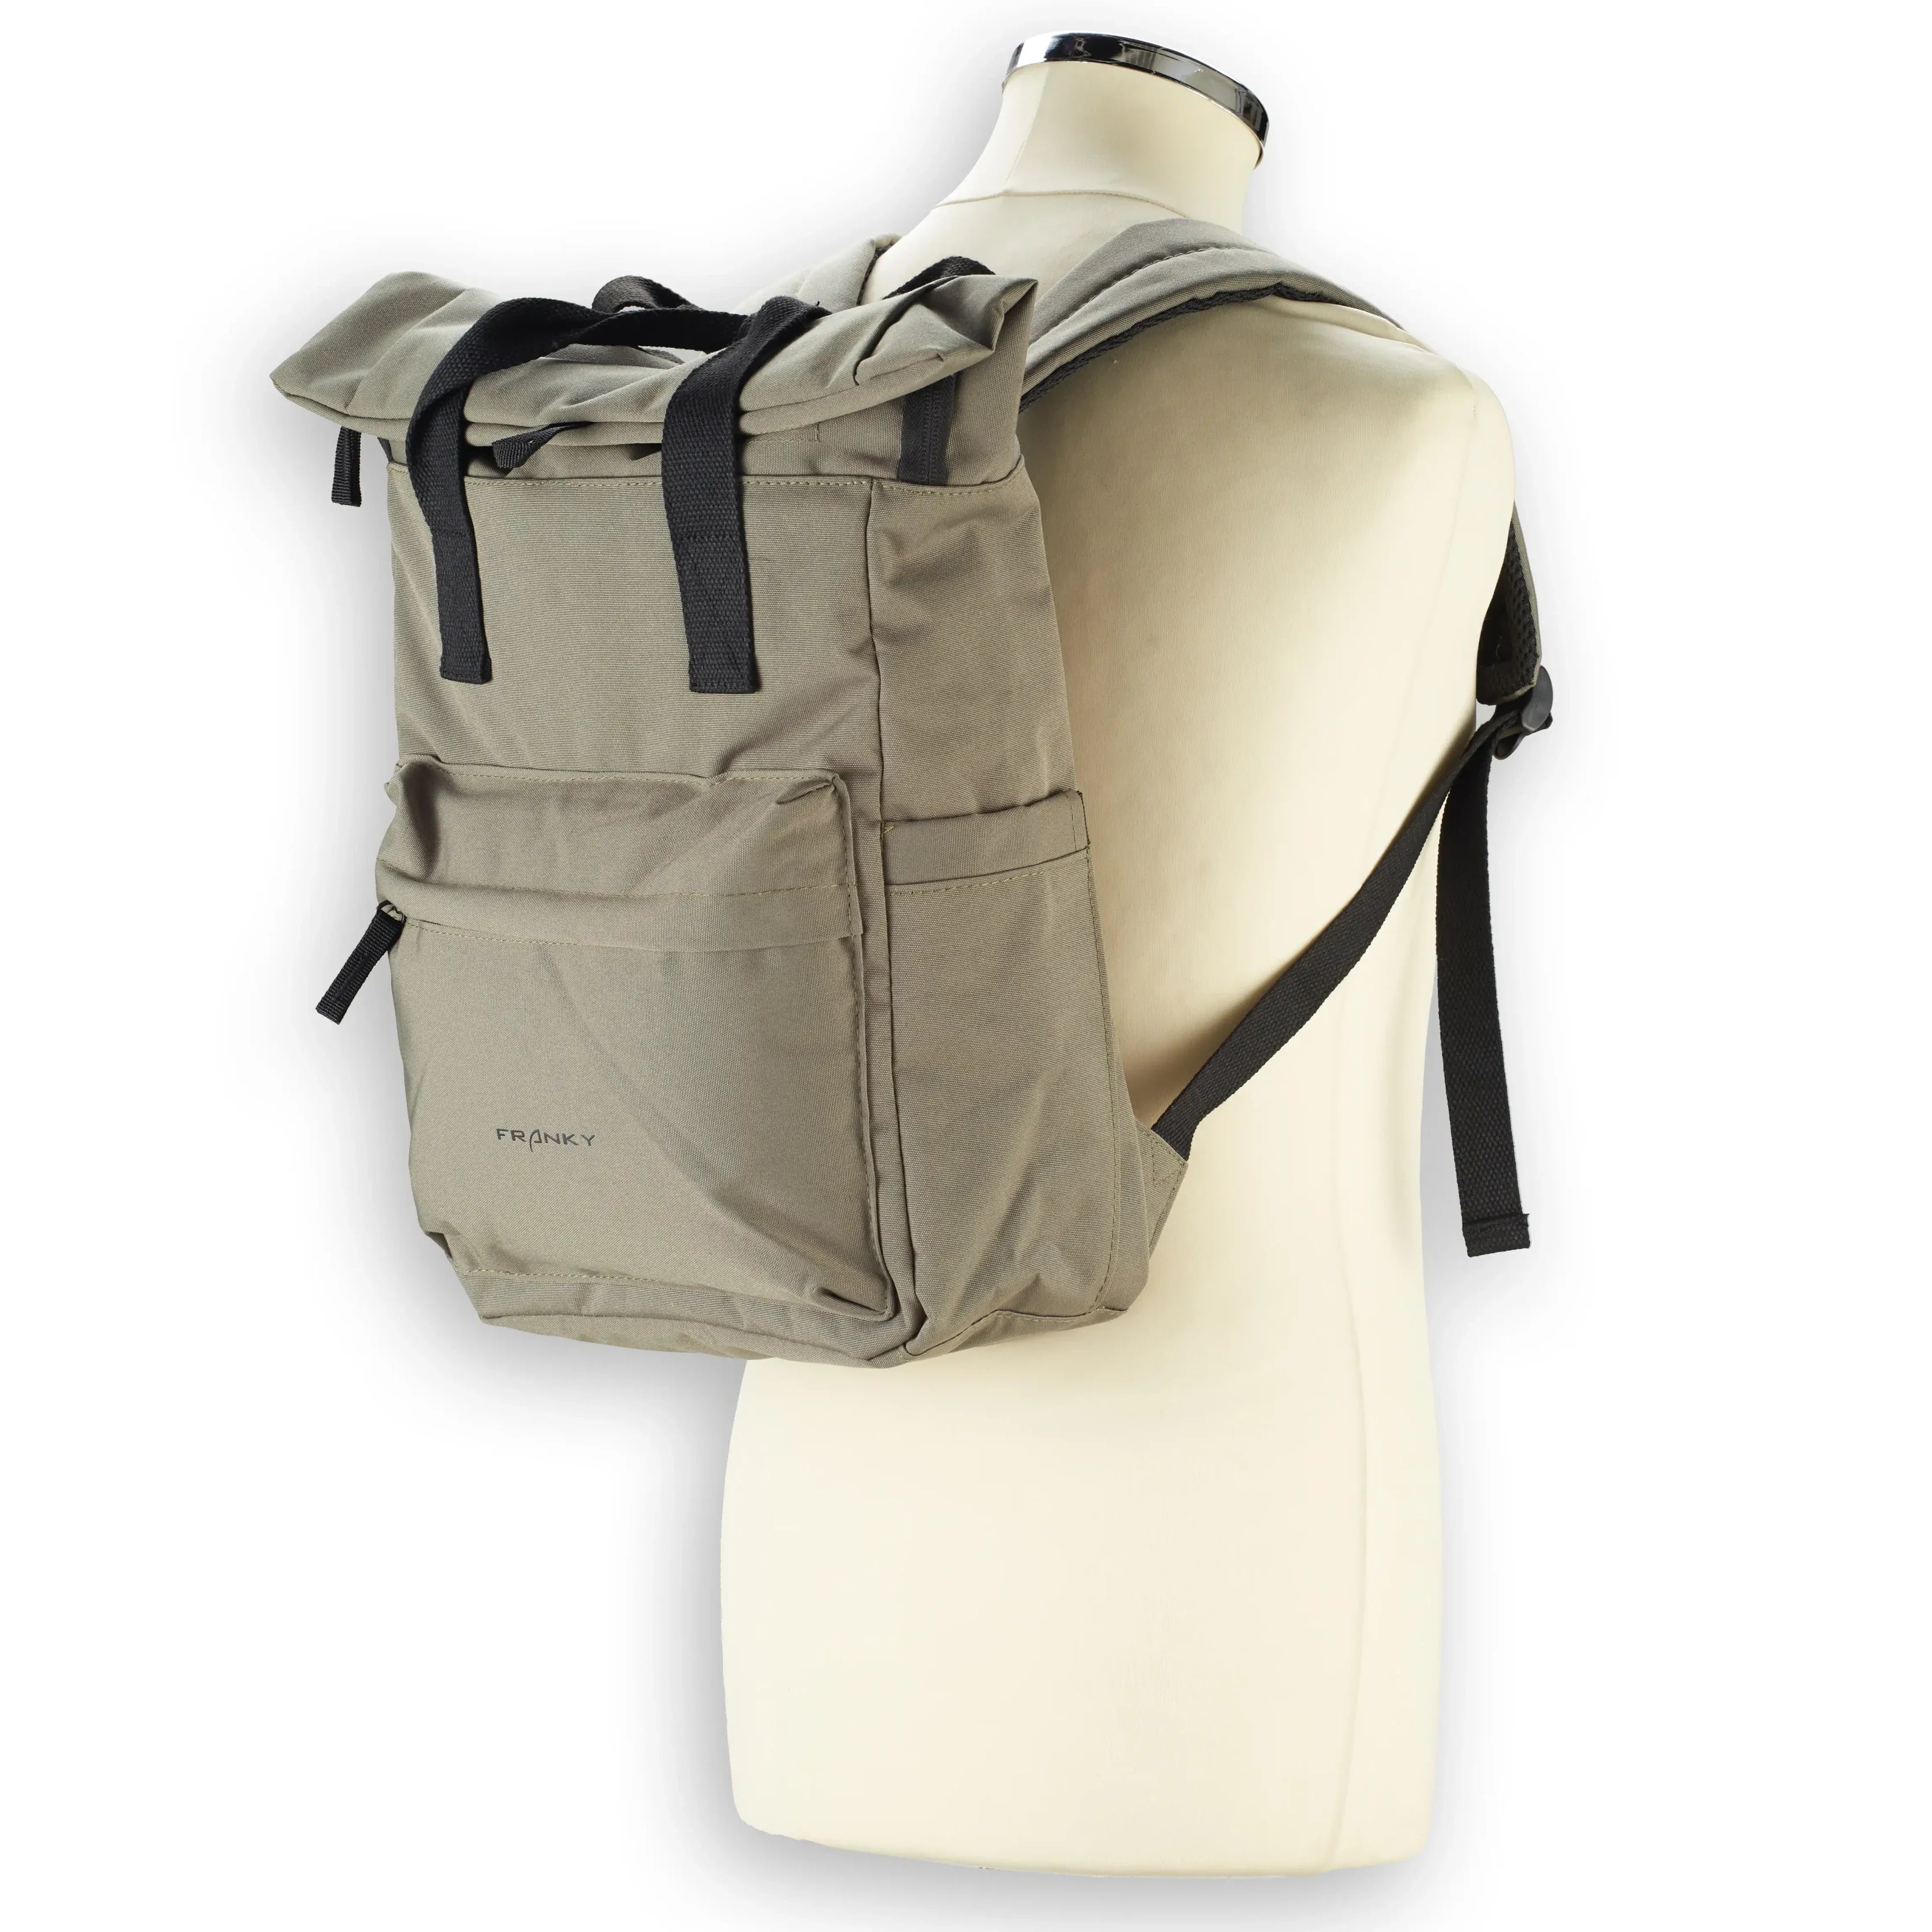 koffer-direkt.de Leisure backpack 42 cm - anthracite